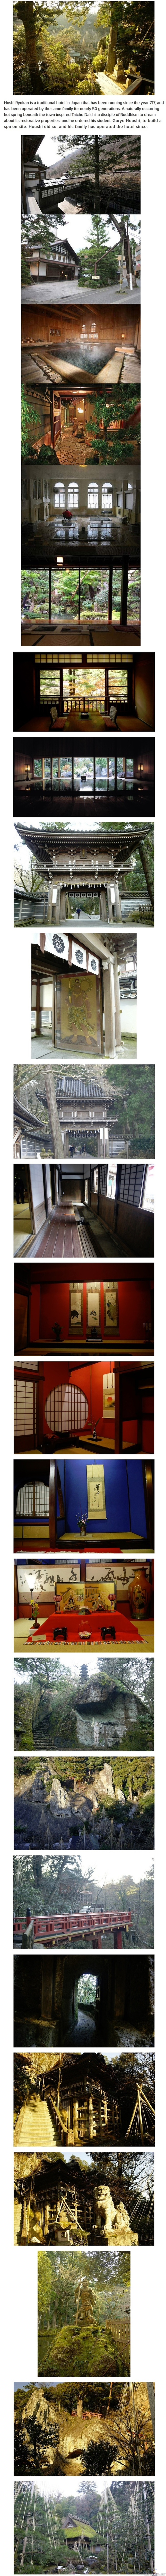 Hōshi Ryokan - Vanha hotelli, perustettu vuonna 718(wikipedia). Ollut toiminnassa jo 46 sukupolven ajan